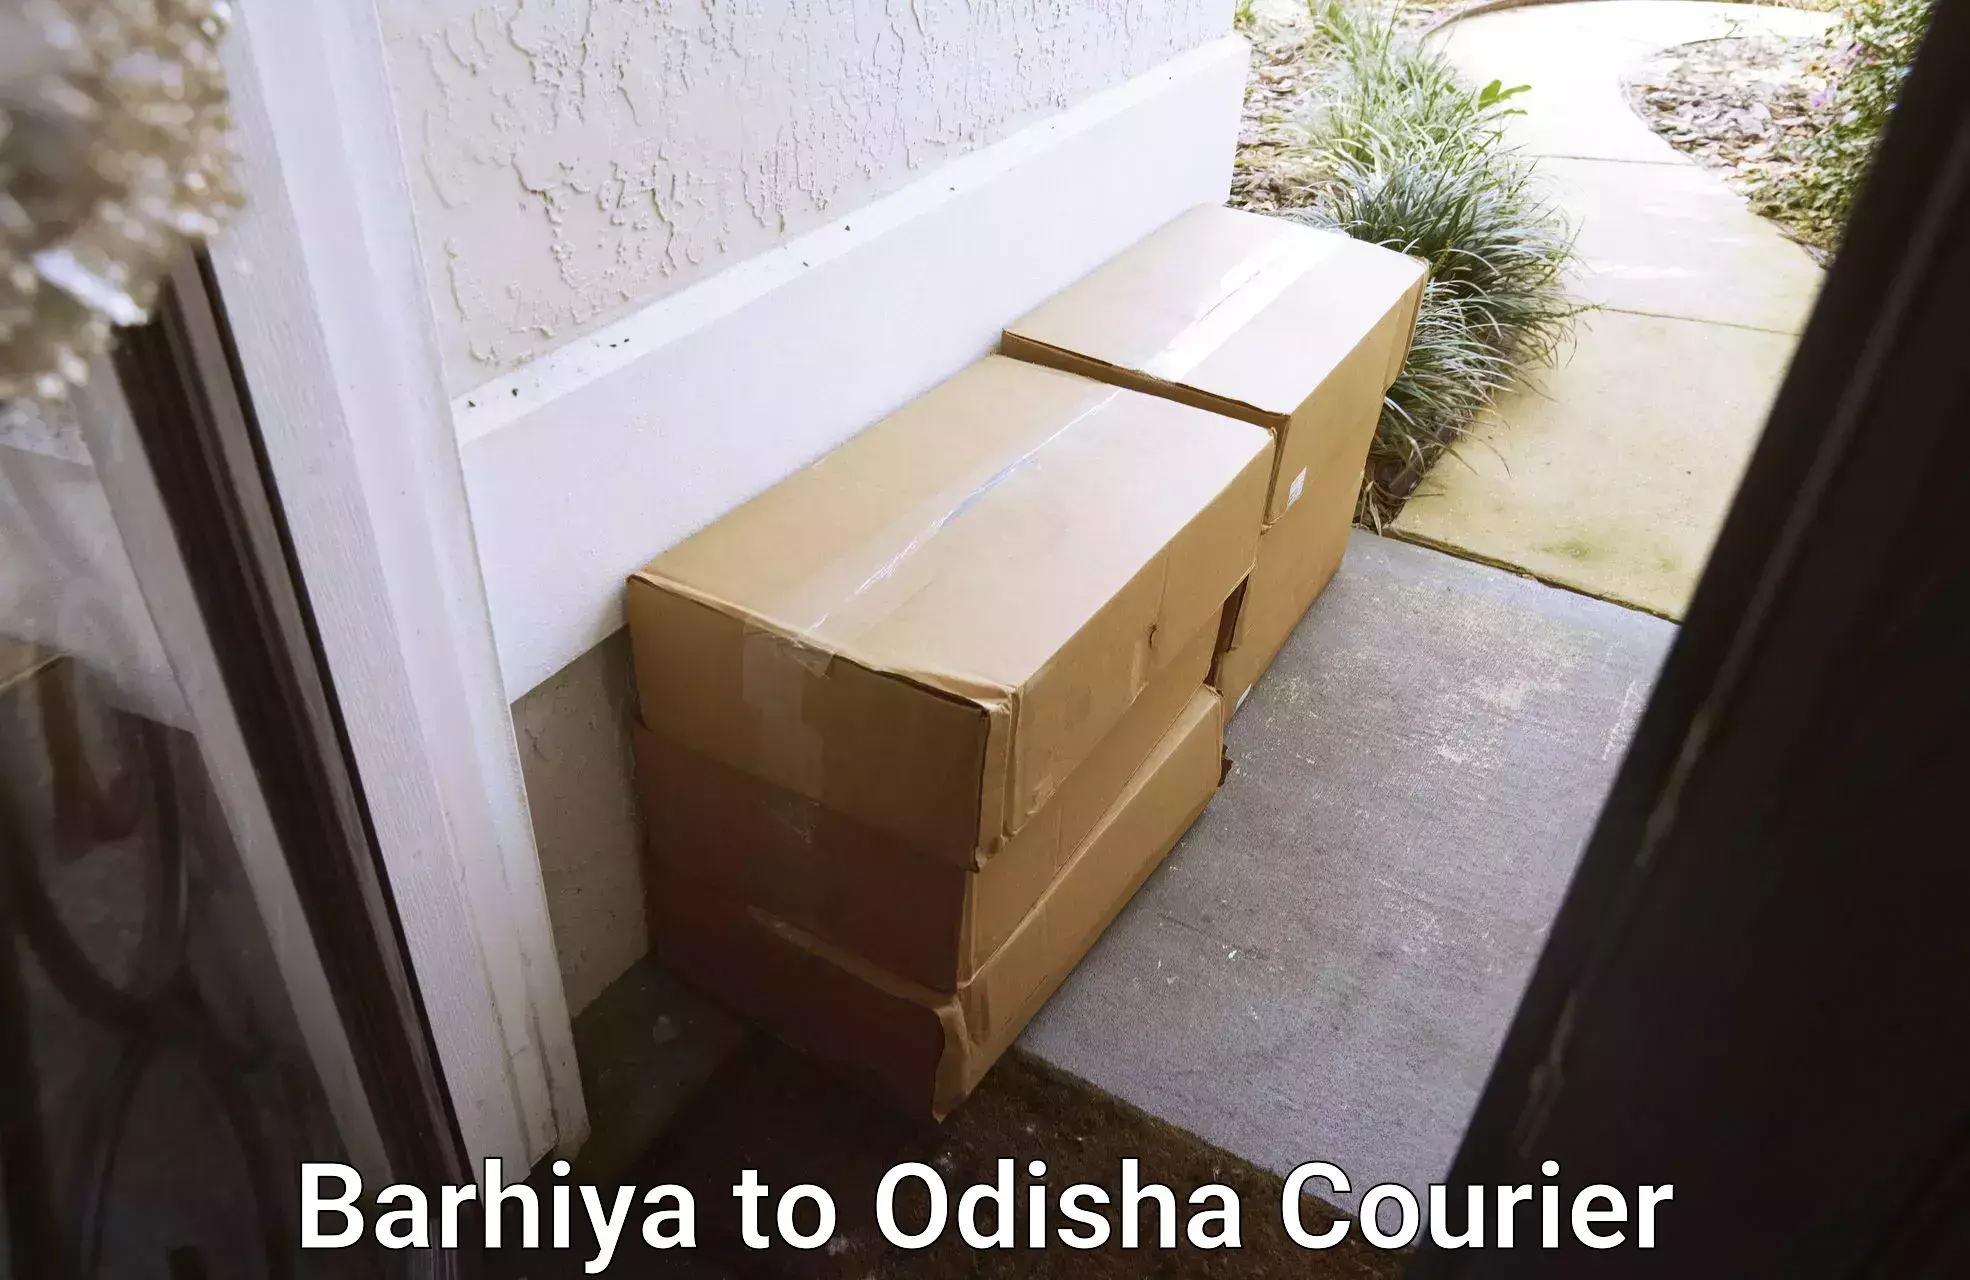 Packing and moving services Barhiya to Jaipatna